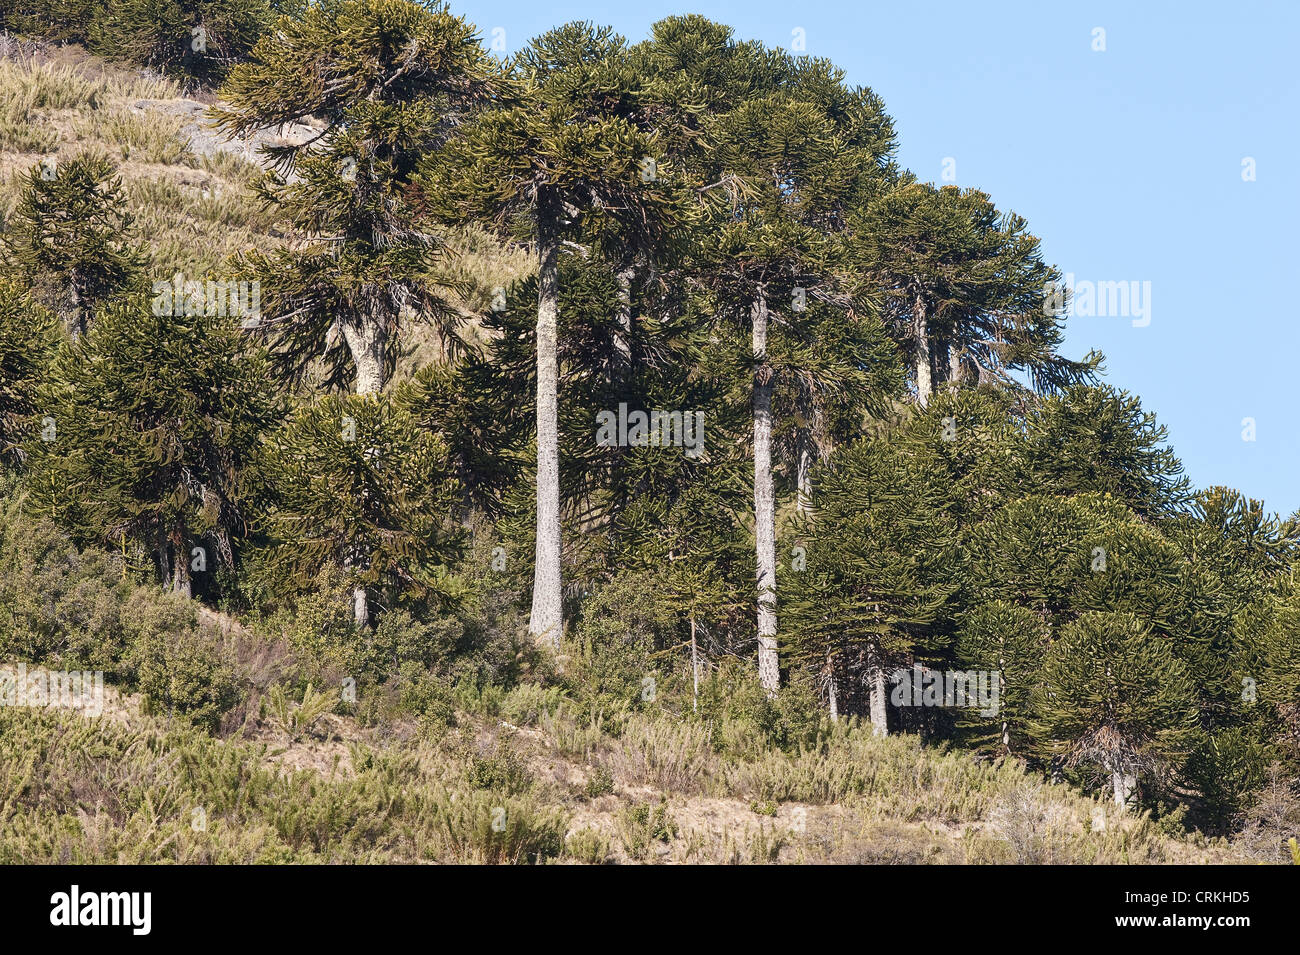 Araucaria (Araucaria araucana) arboleda de la provincia de Neuquén, Argentina, Sudamérica Diciembre Foto de stock